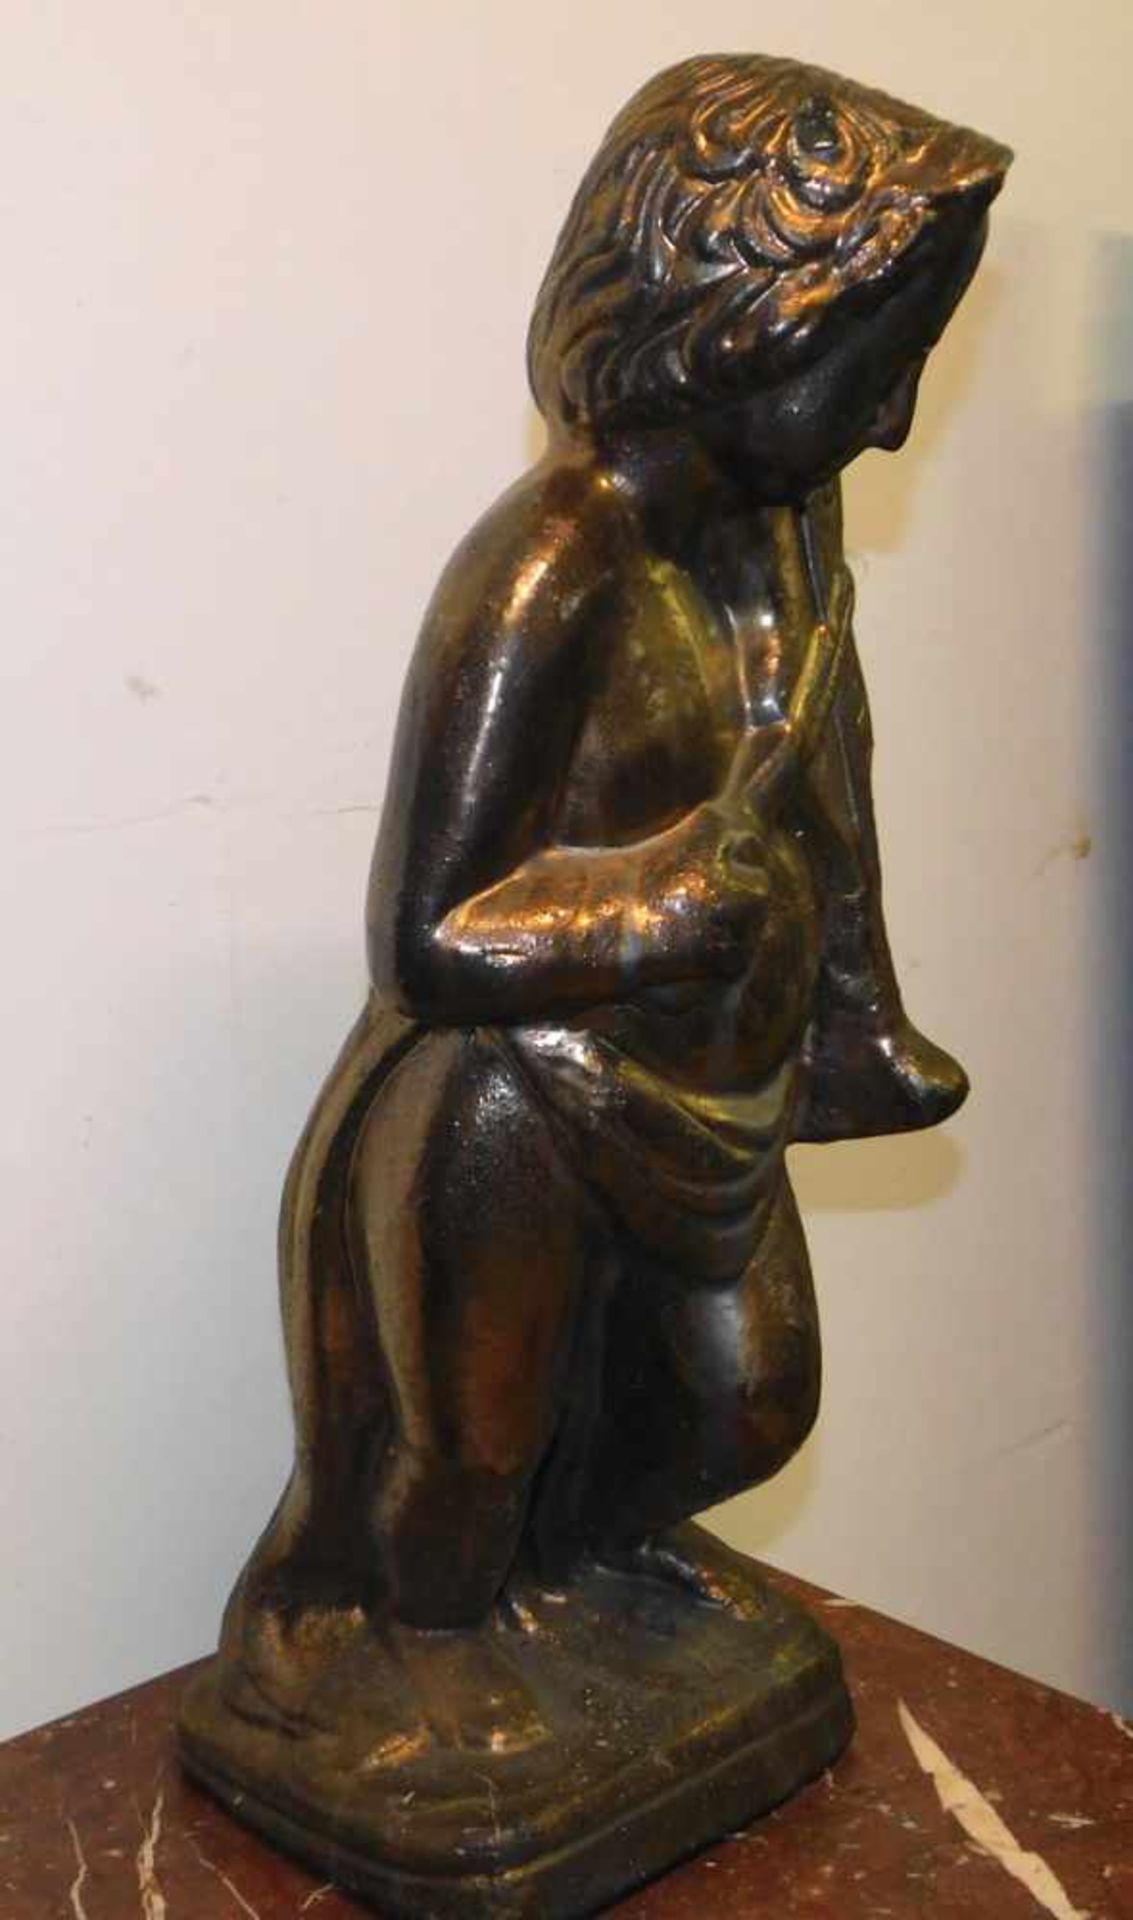 Engel mit Geige, Terrakotta in Goldbronze gefasst, 2. H. 20. Jhdt., Höhe 62 cm, Sockel 19 x 22 cm. - Bild 2 aus 2